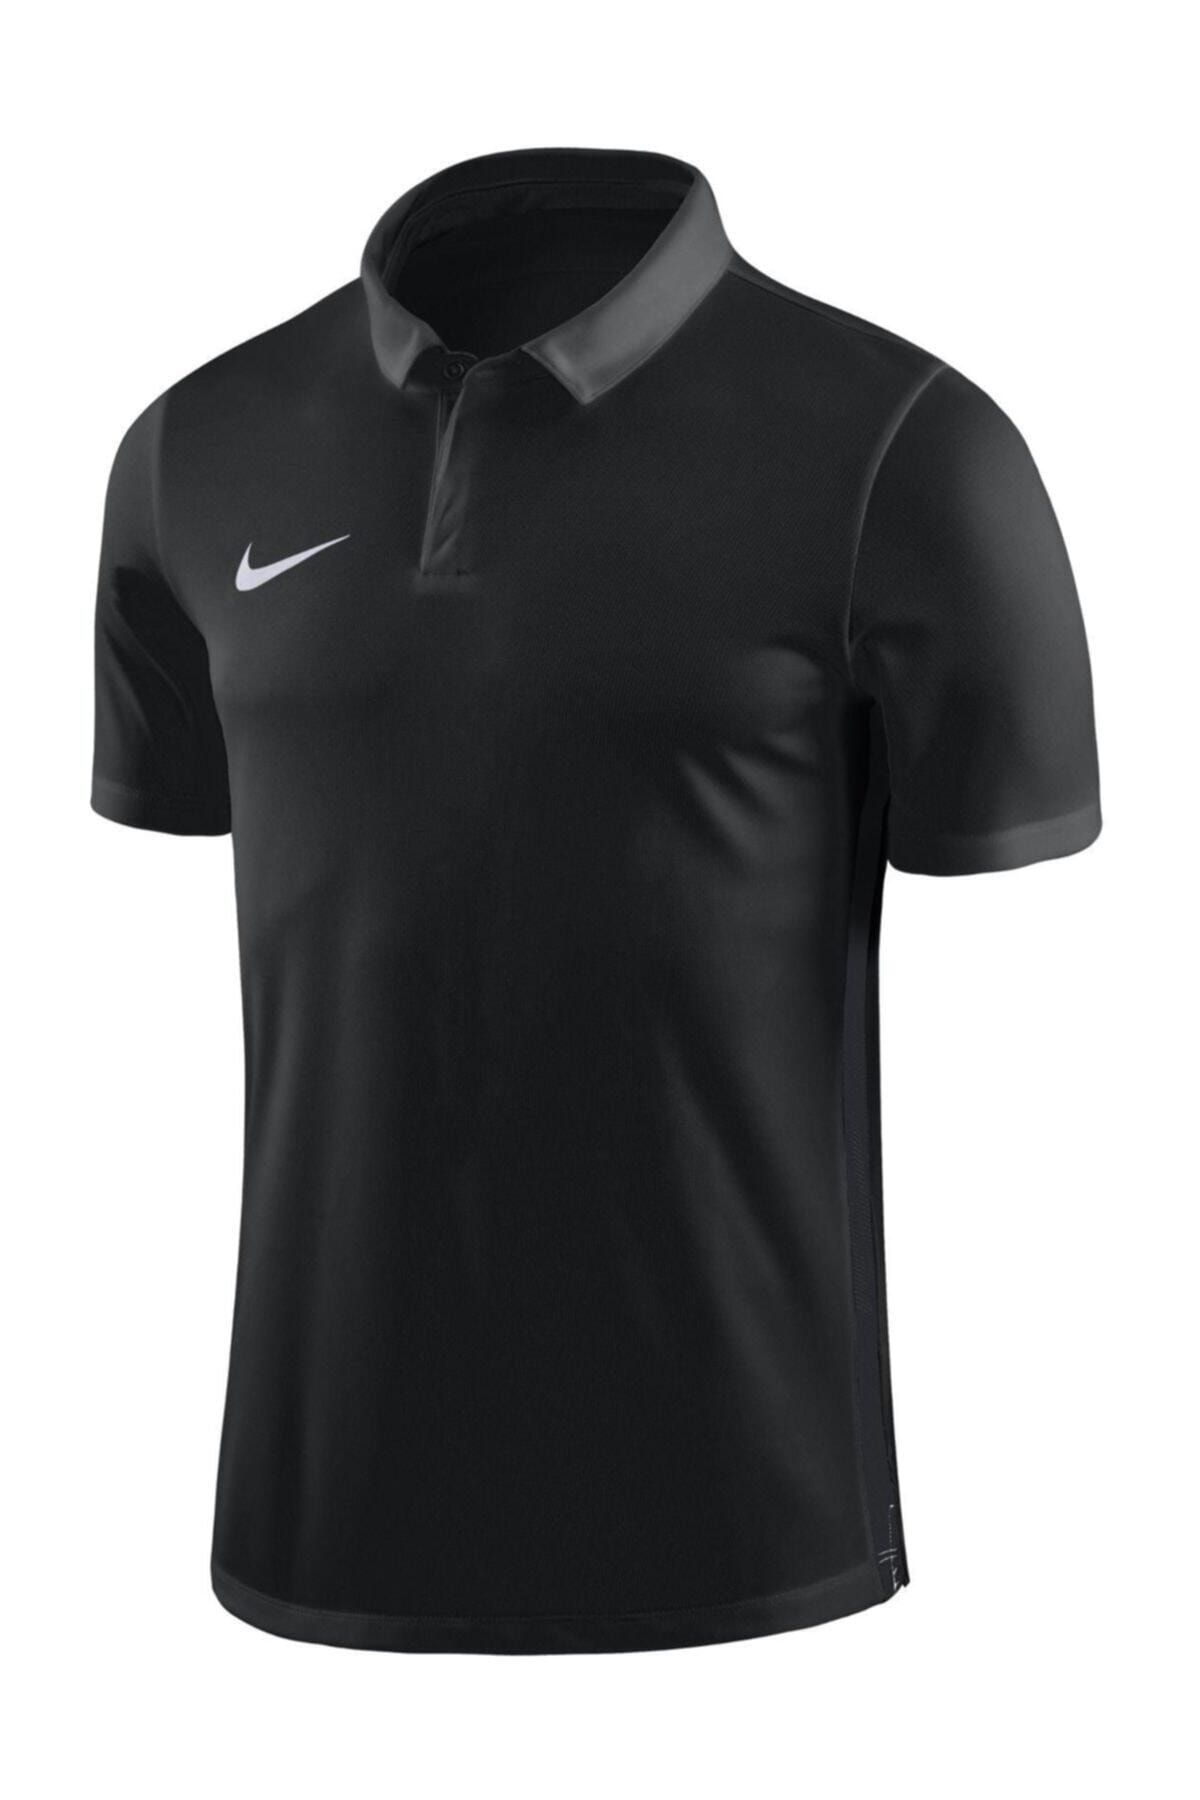 Nike Erkek Siyah Polo Yaka T-shirt Dry Academy 18 Ss 899984-010